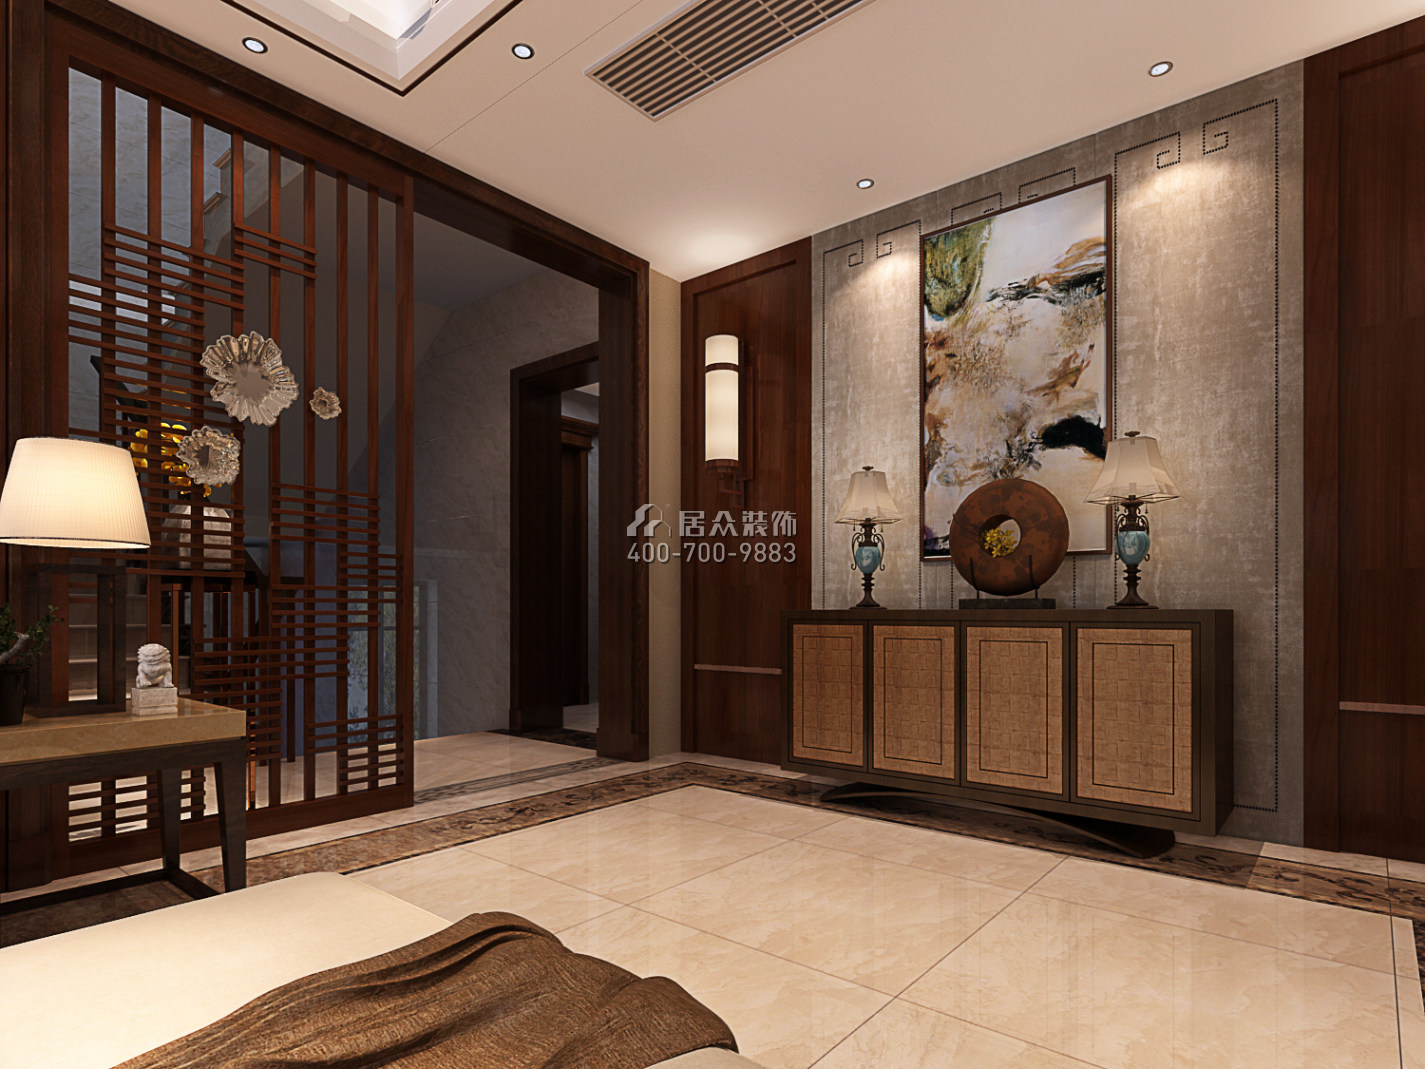 宝峰欣城1000平方米中式风格别墅户型客厅装修效果图